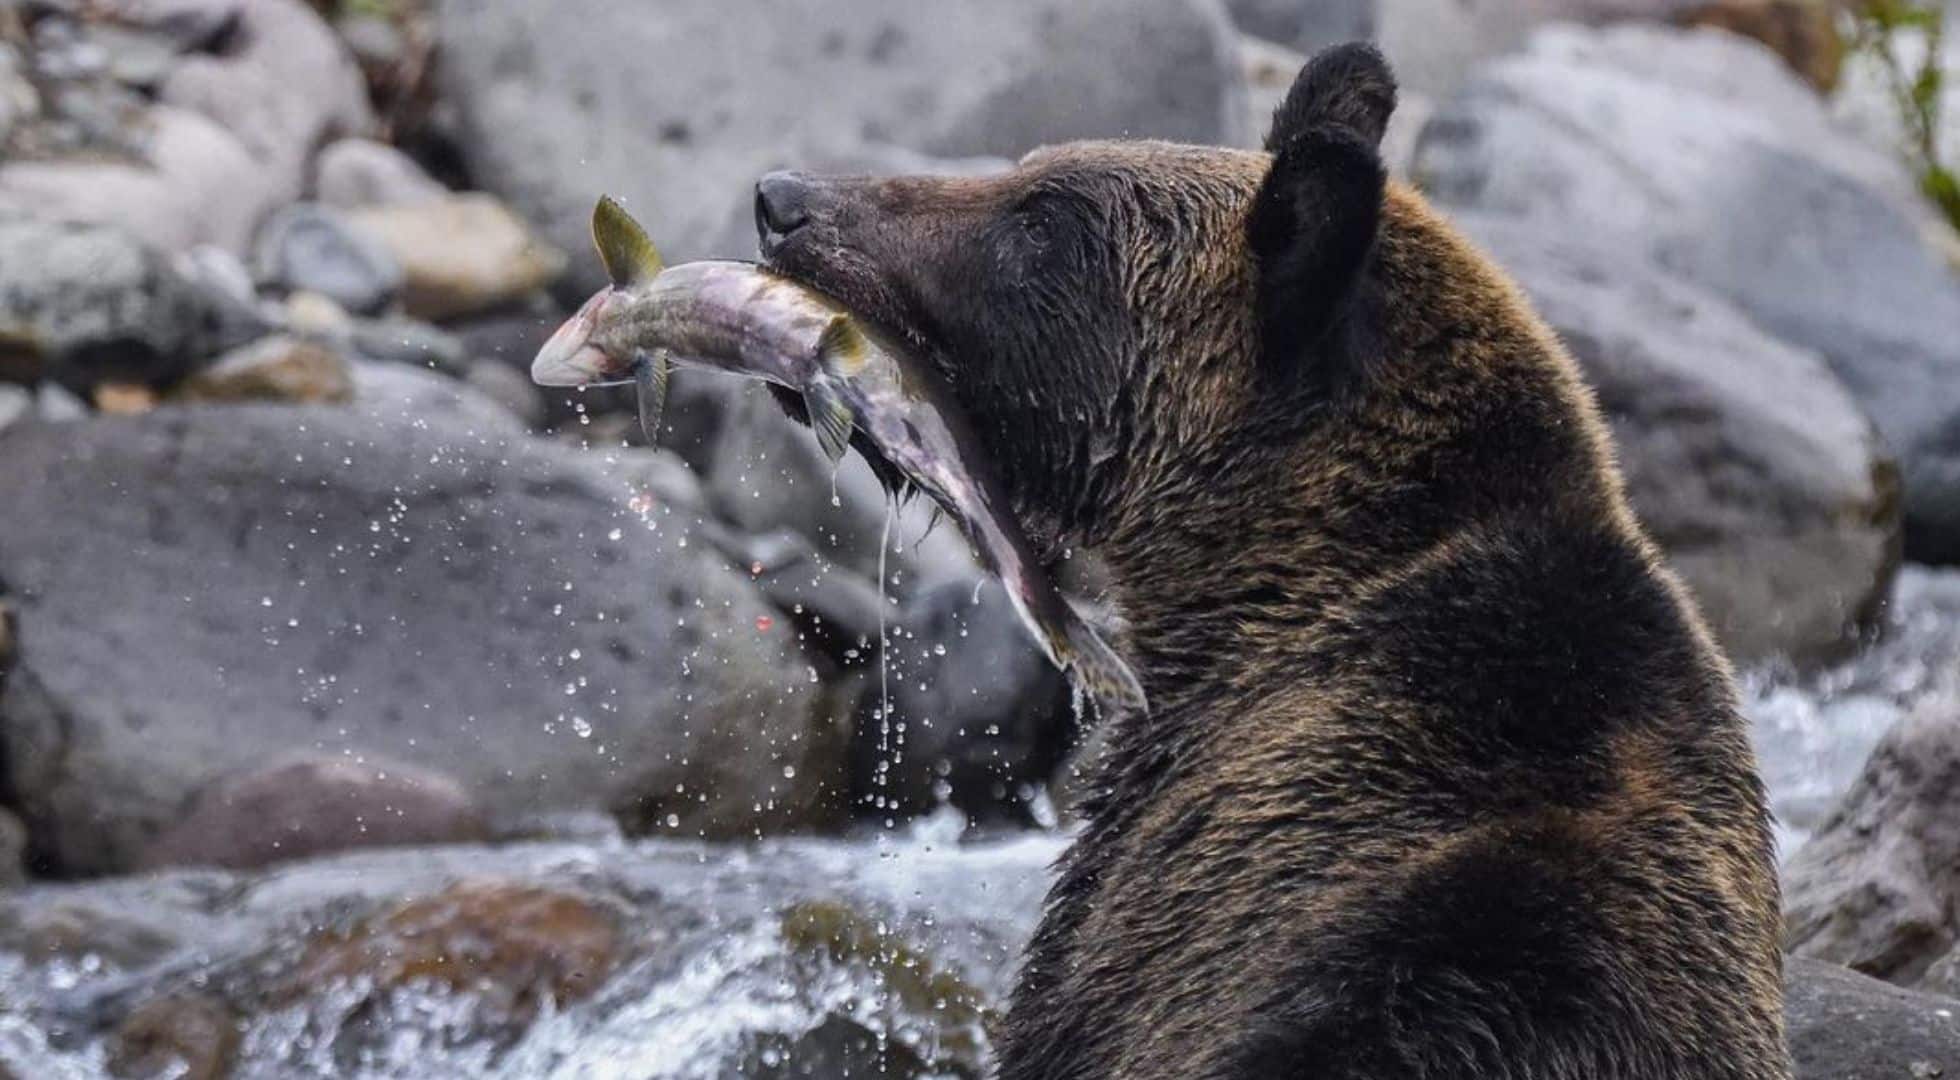 A Hokkaido Japan Travel Guide: Where to see brown bears.